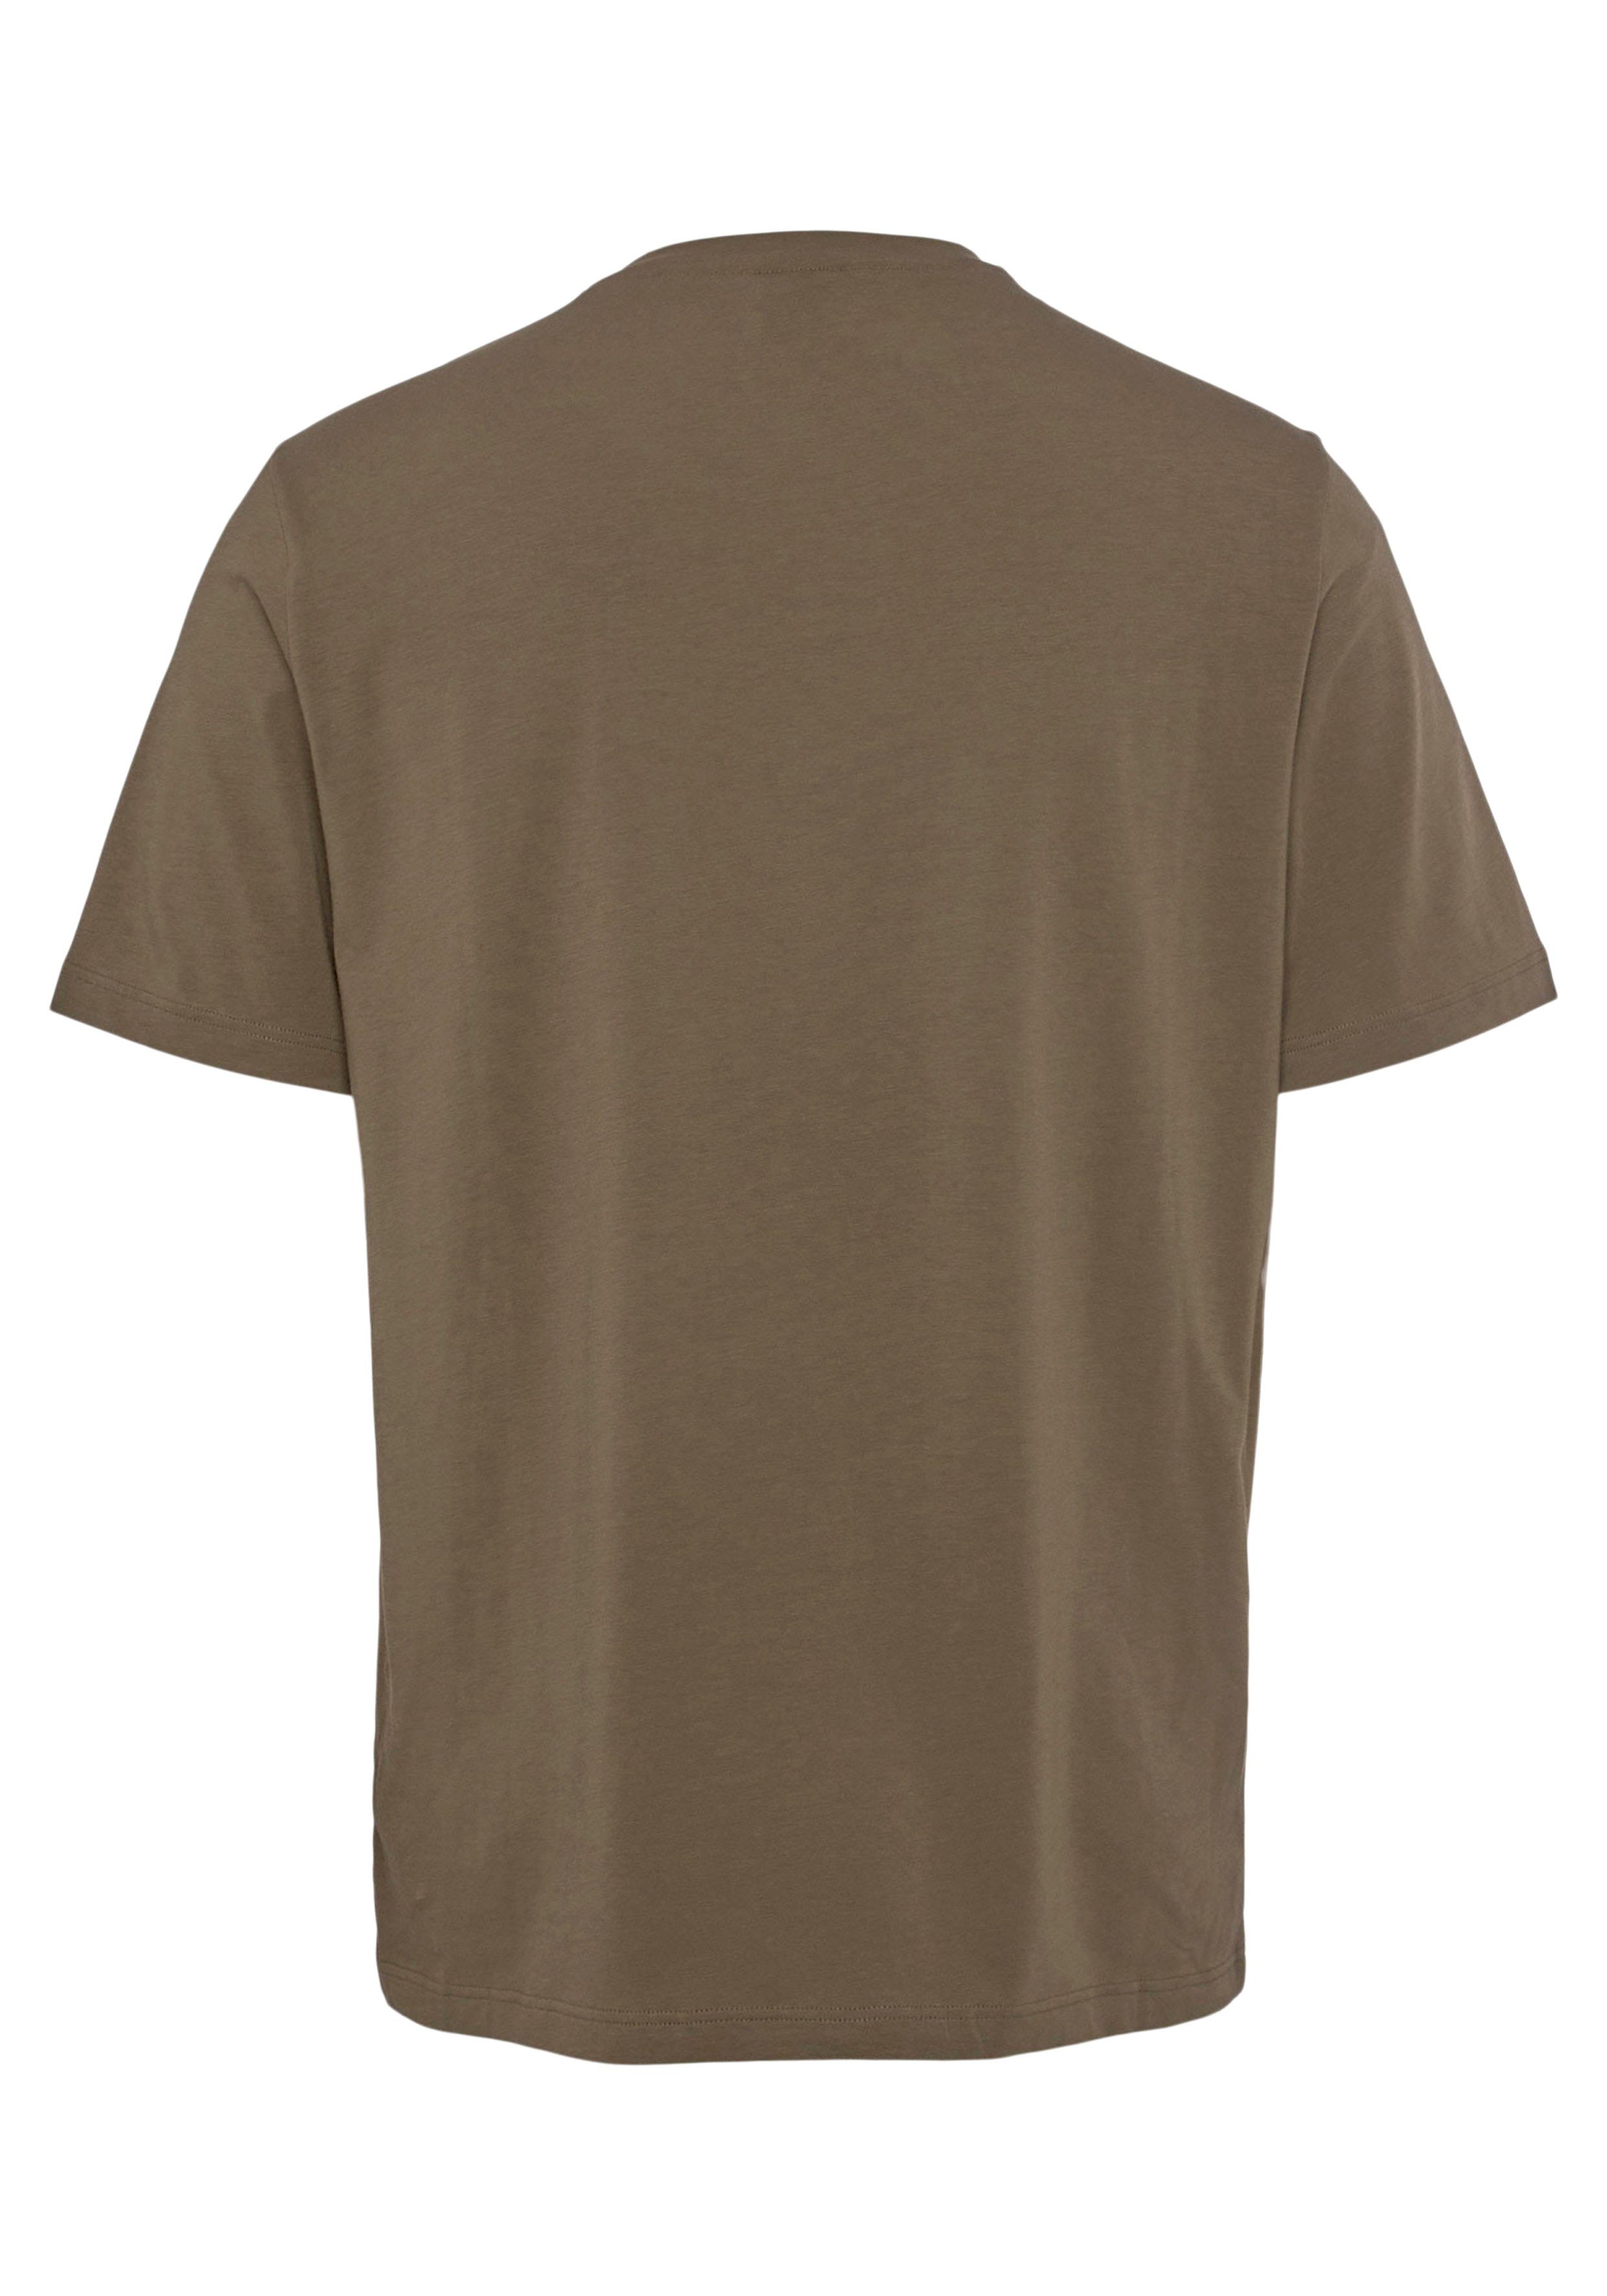 der Open-Green T-Shirt Mit R BOSS auf Mix&Match Brust Stickerei T-Shirt BOSS